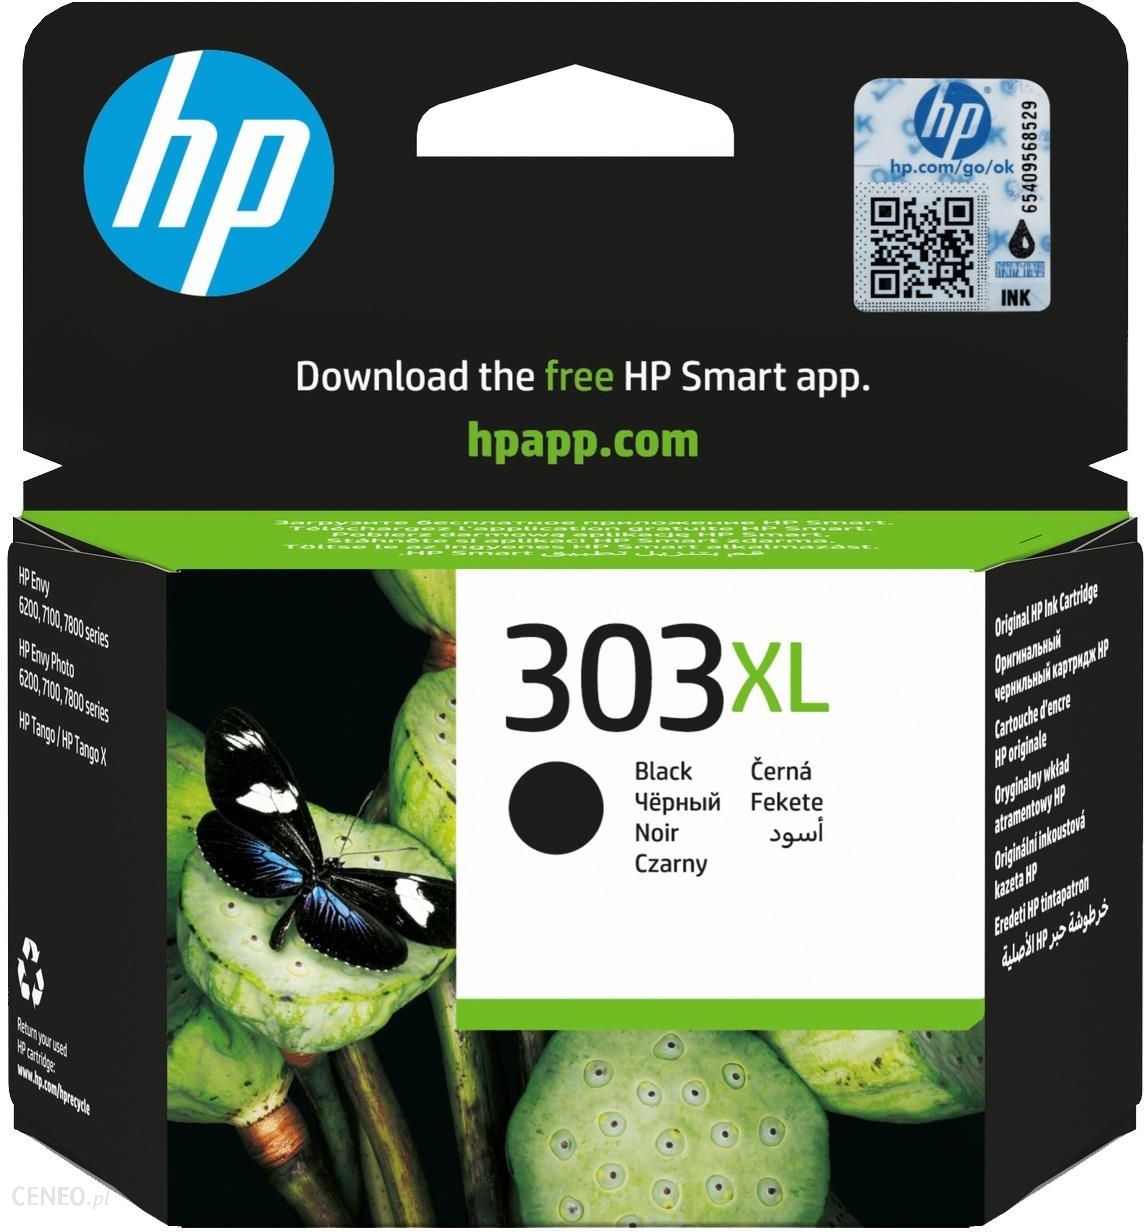 ✓ Pack compatible avec HP 303XL (T6N04AE/T6N03AE) noir et couleur couleur  pack en stock - 123CONSOMMABLES